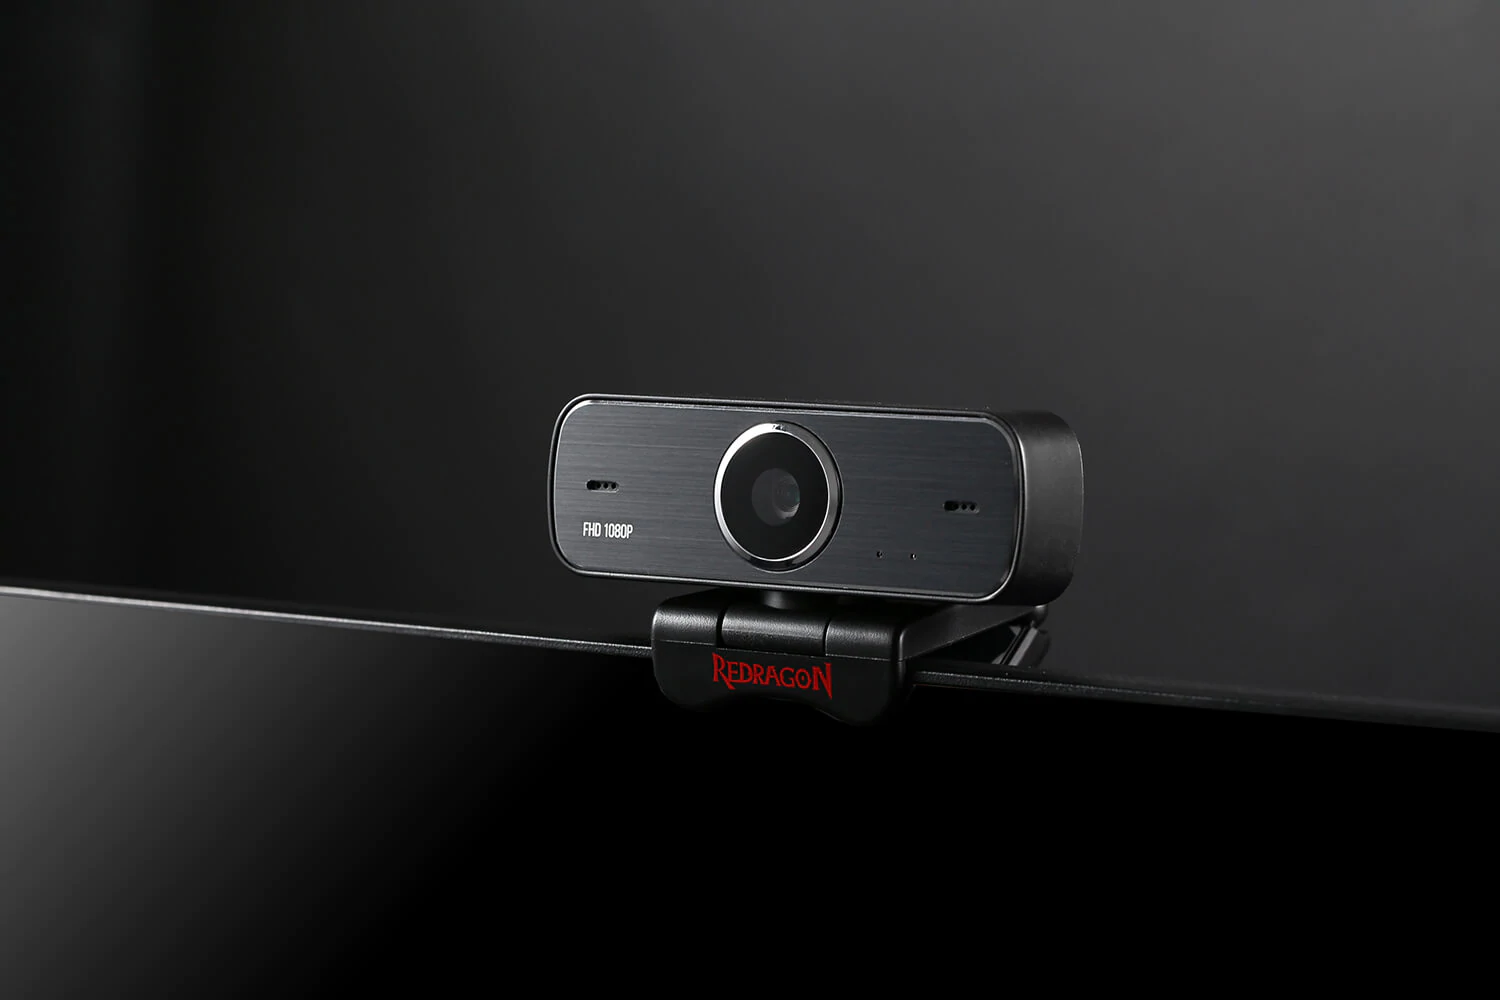 Dicas para streamers: opções de webcam, microfone, PC e muito mais